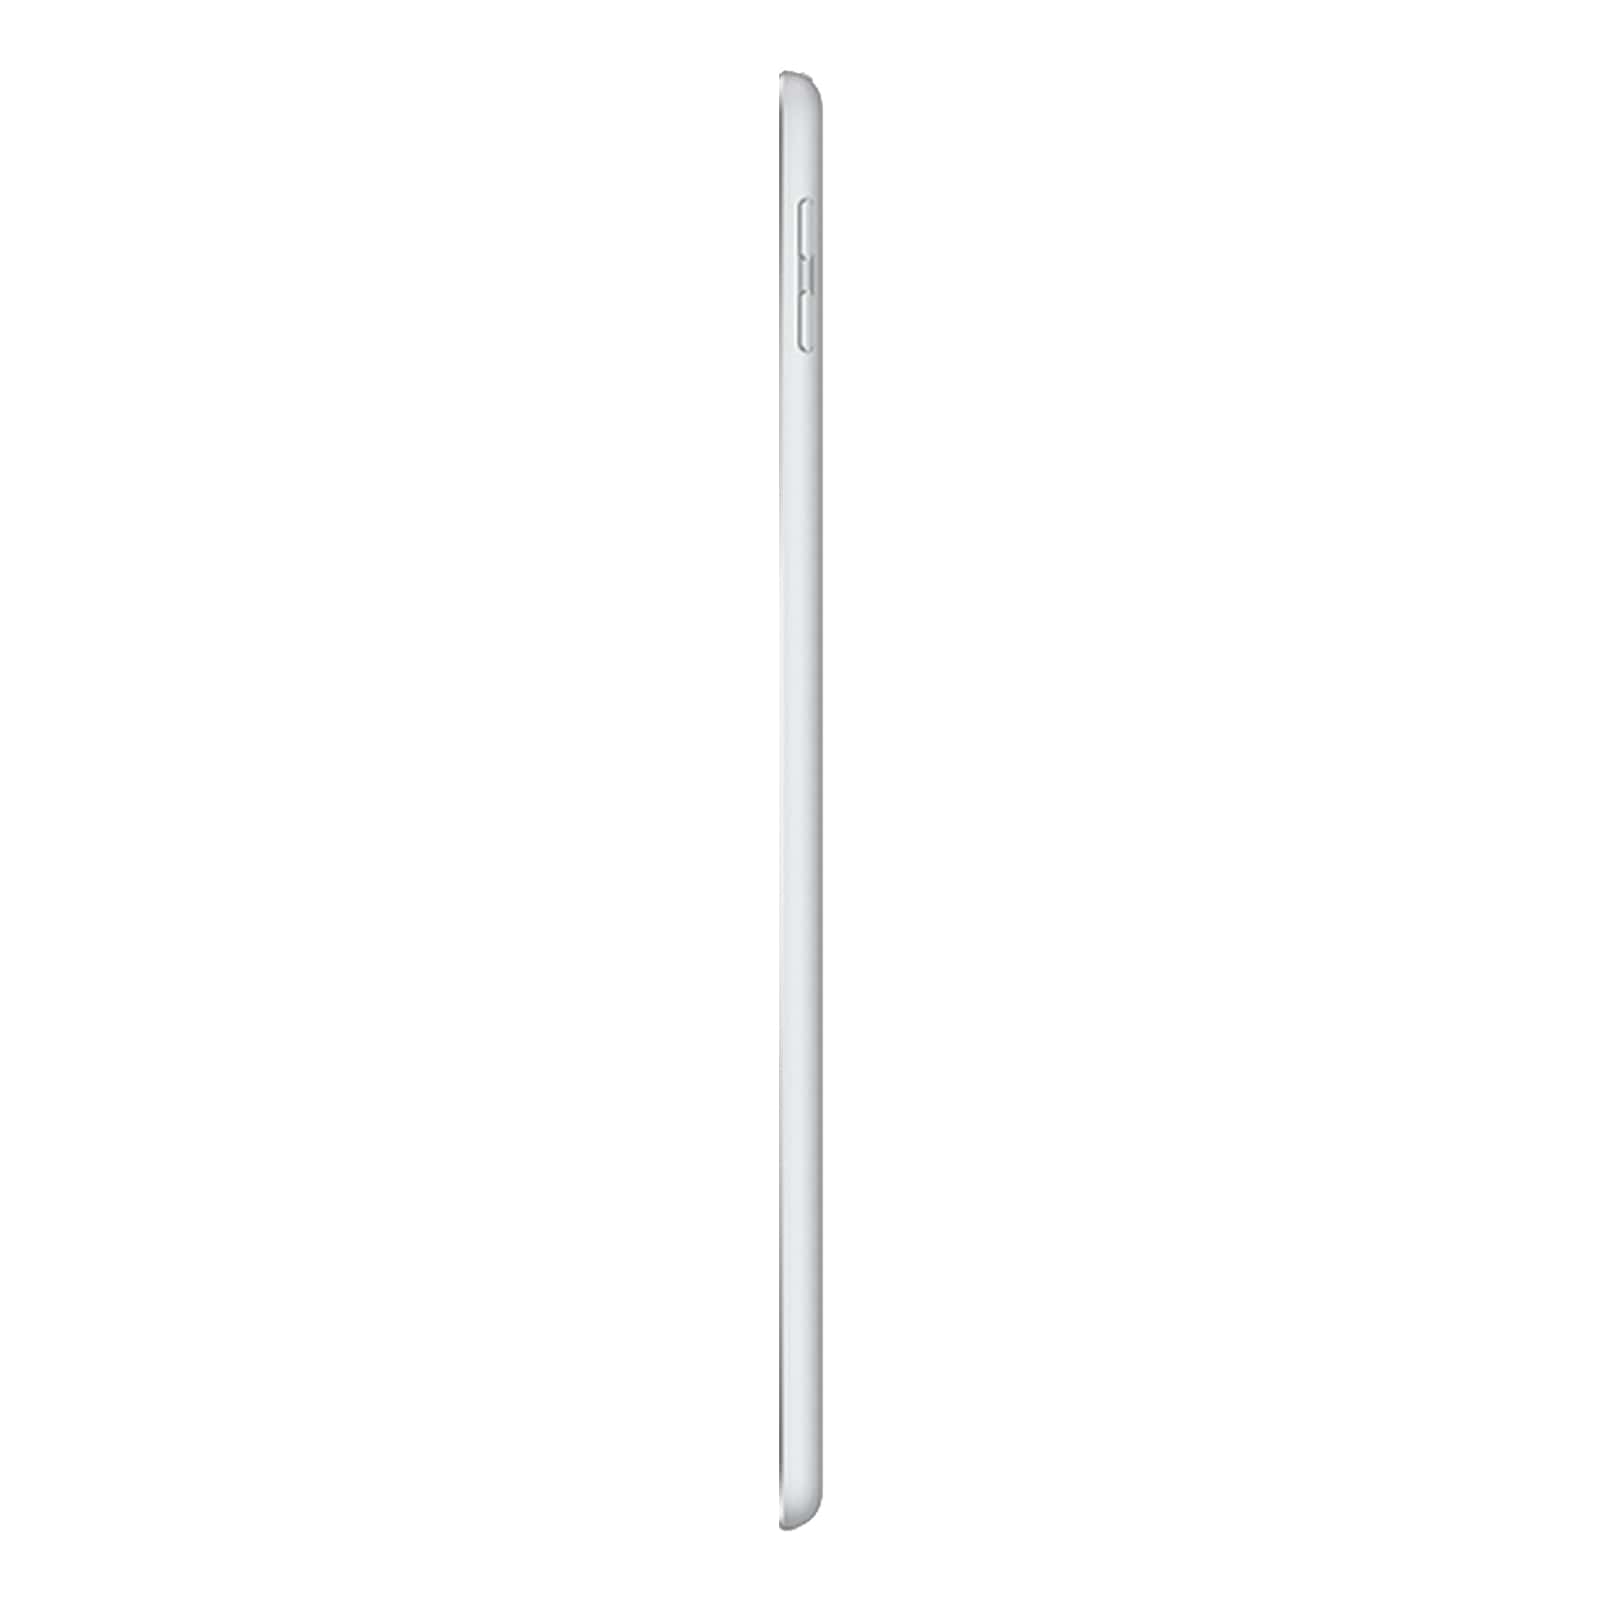 Apple iPad 6 128GB WiFi Silver - Very Good